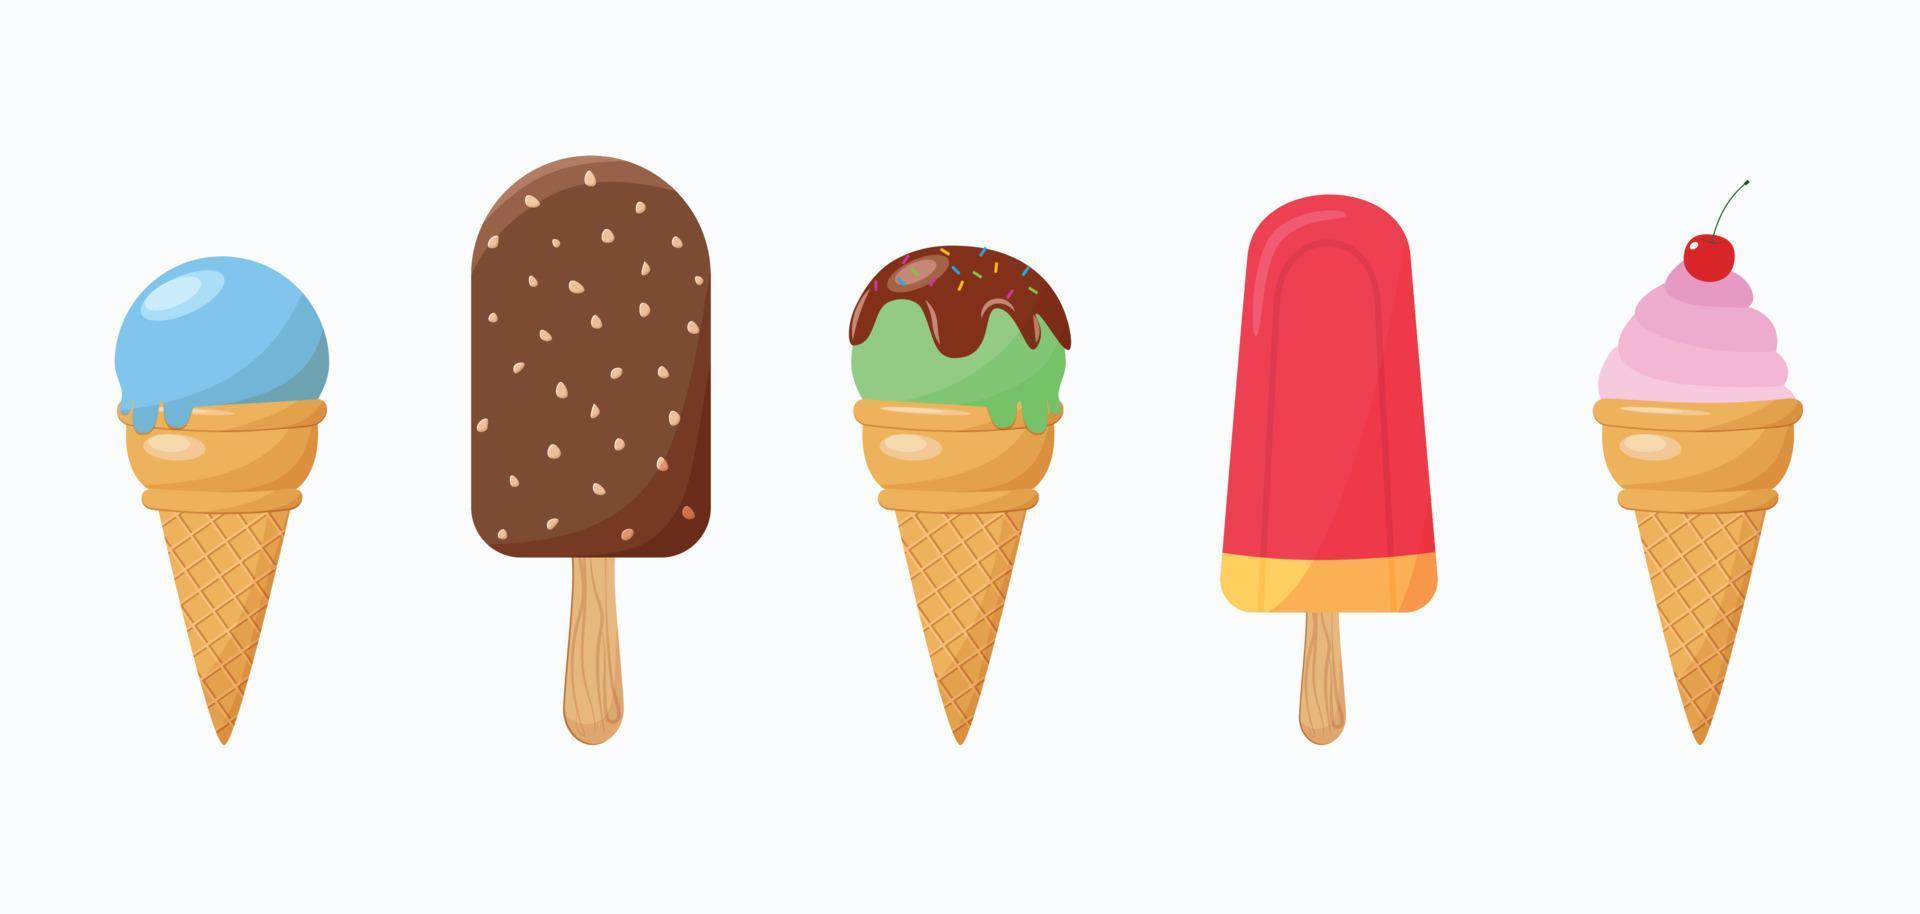 heerlijke kleurrijke ijsset. collectible ijs en popsicle kegels met verschillende toppings geïsoleerd op een witte achtergrond. vectorillustratie voor webdesign of print vector